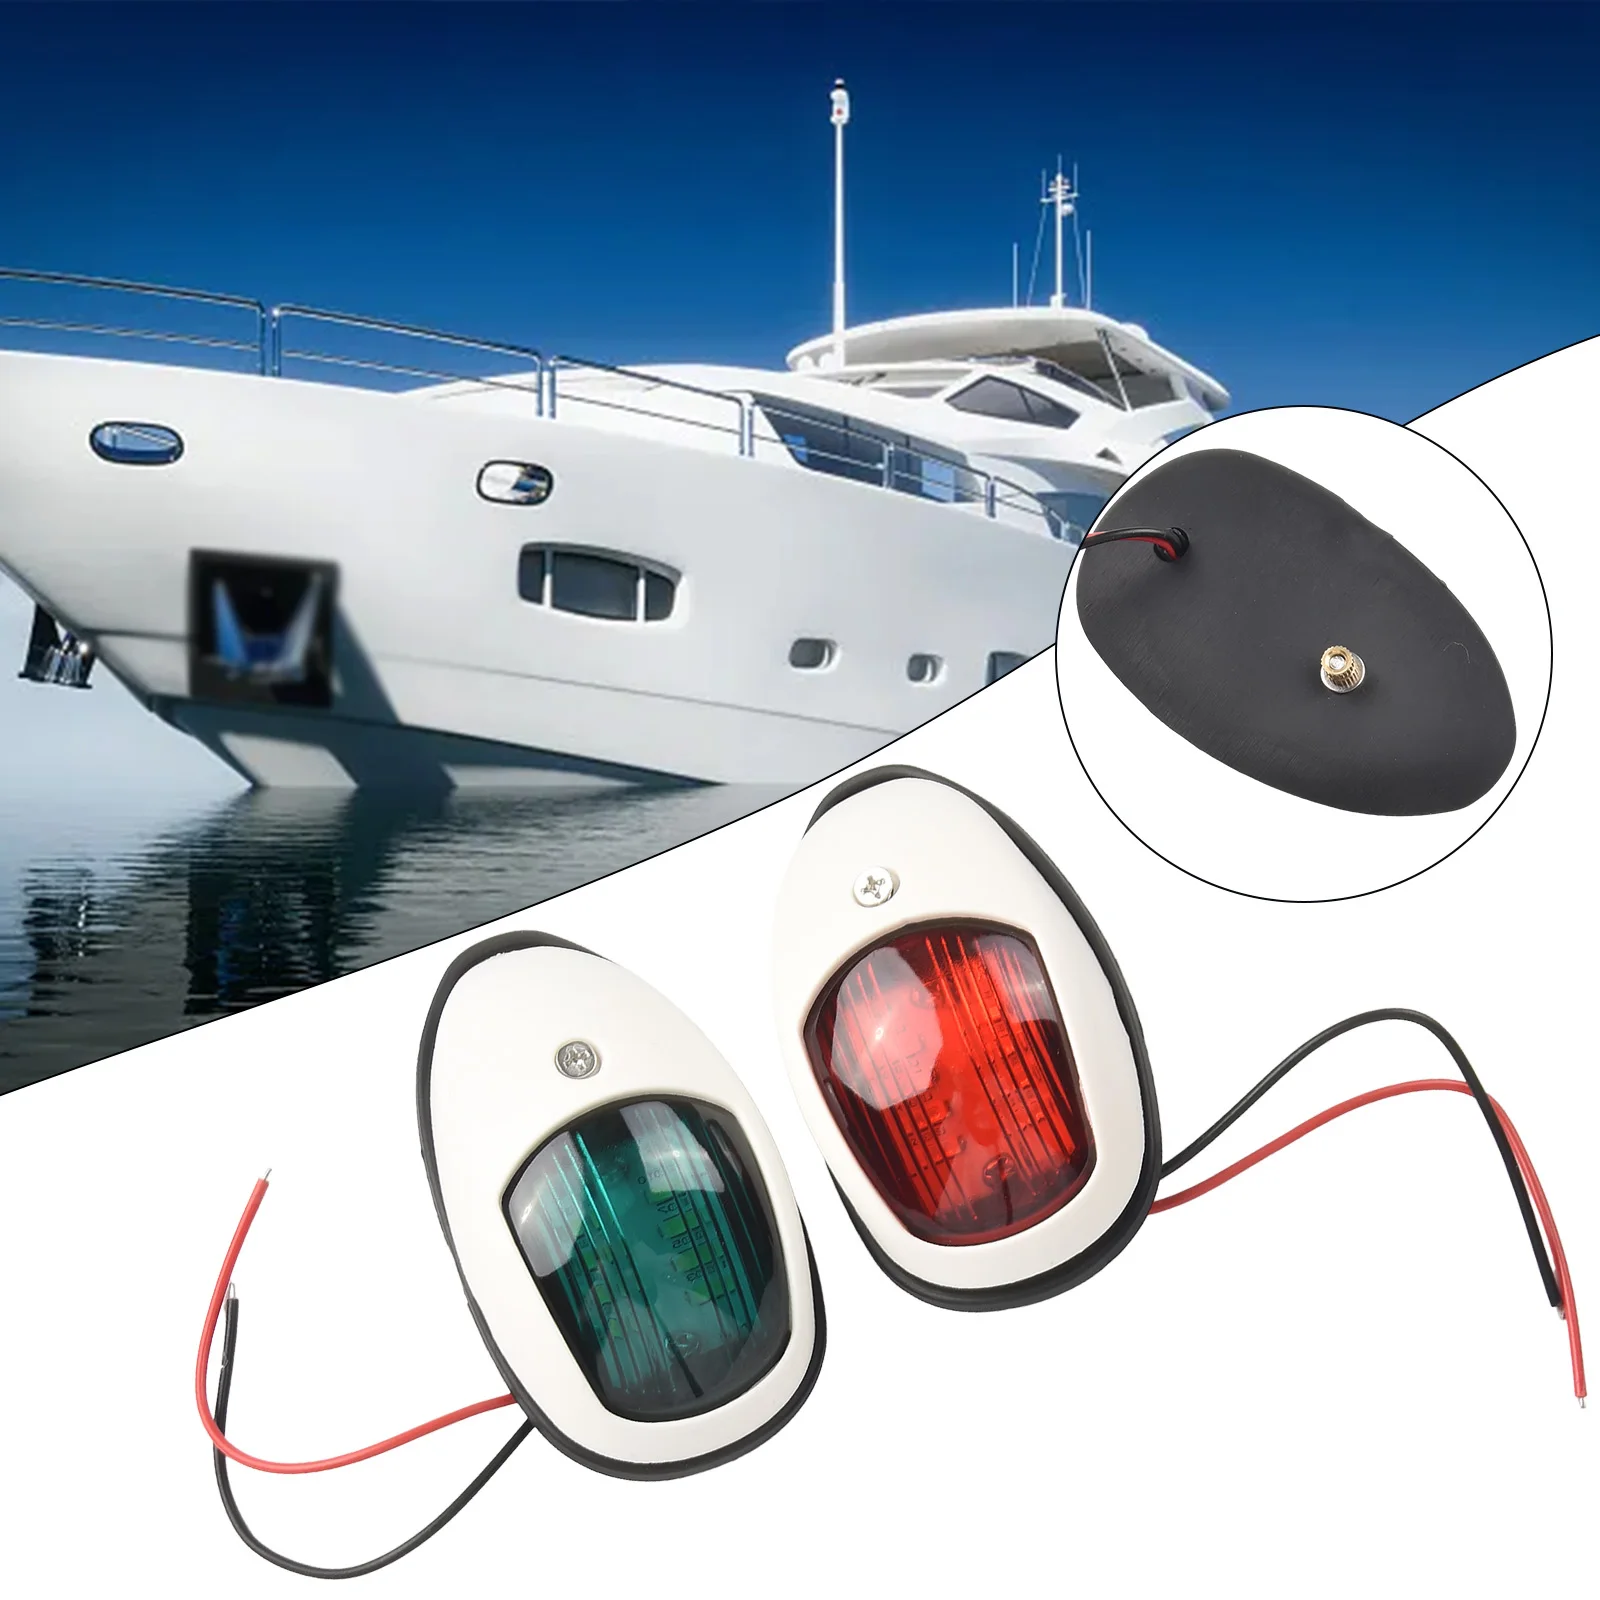 

Понтонные фонари для лодок, пара красных и зеленых 8 ламп для навигации, универсальная установка, качественный материал, простота в использовании